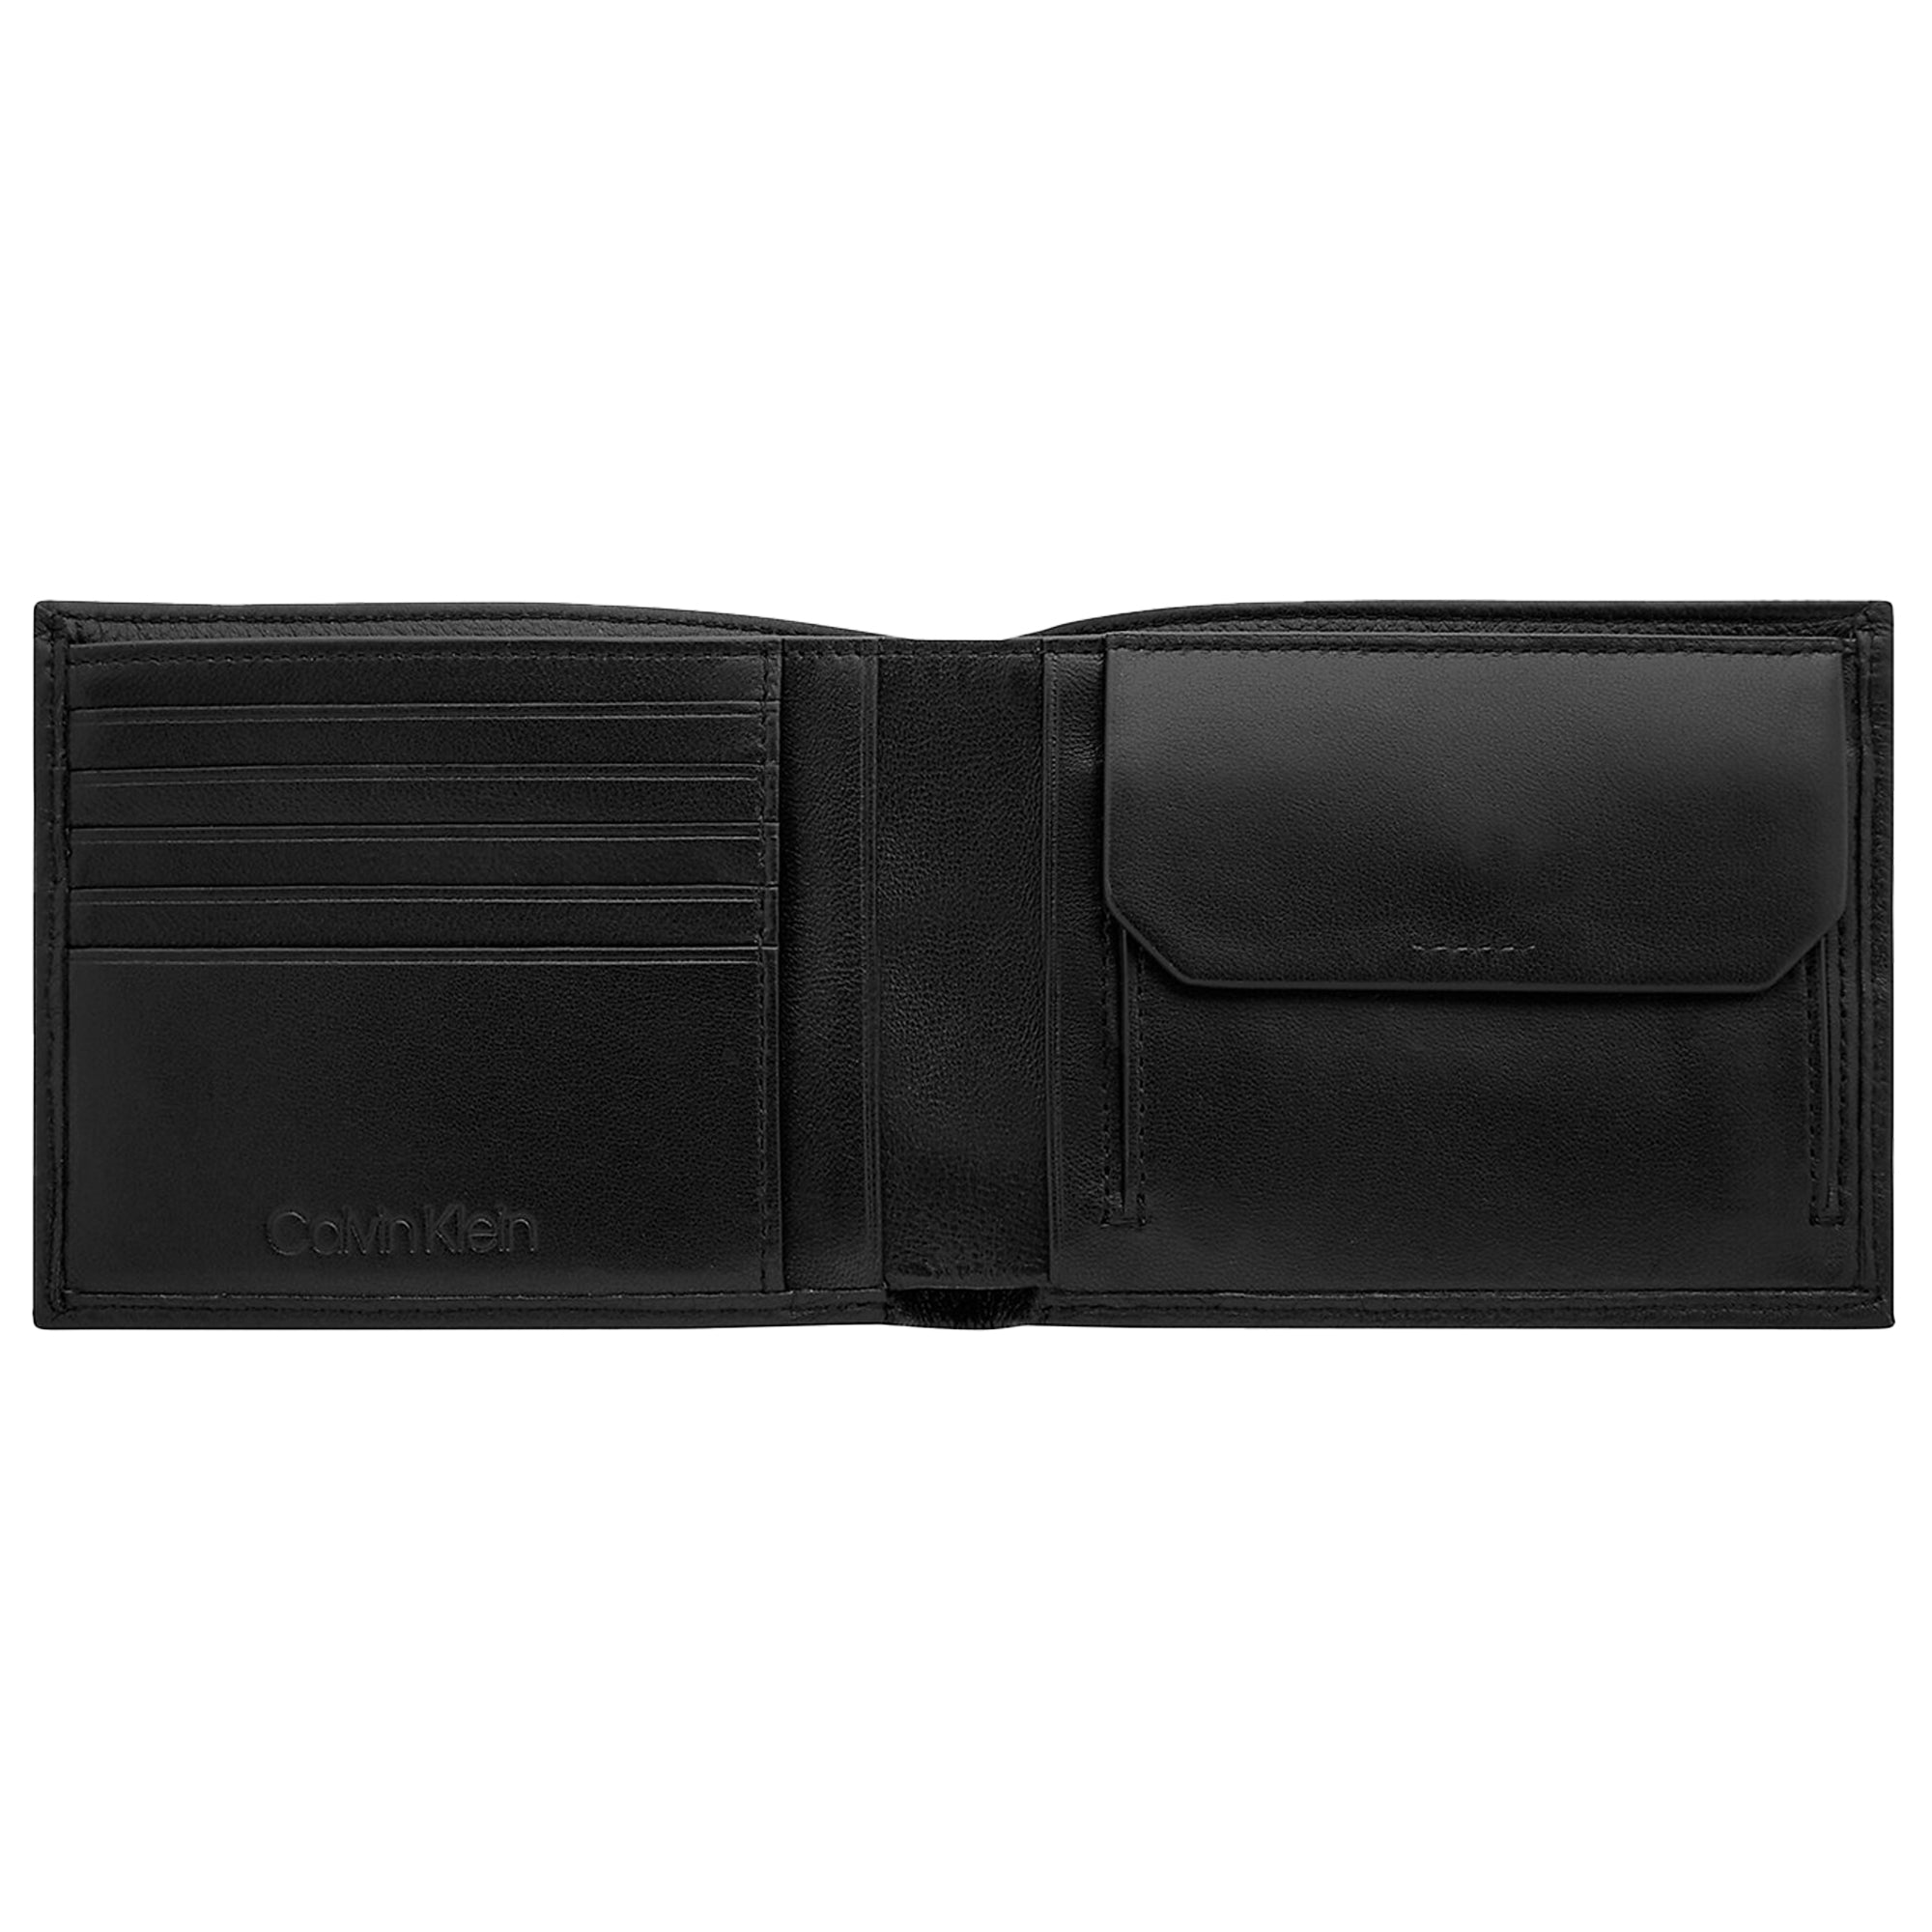 Calvin Klein RFID-Blocking Leather Billfold Wallet - Black